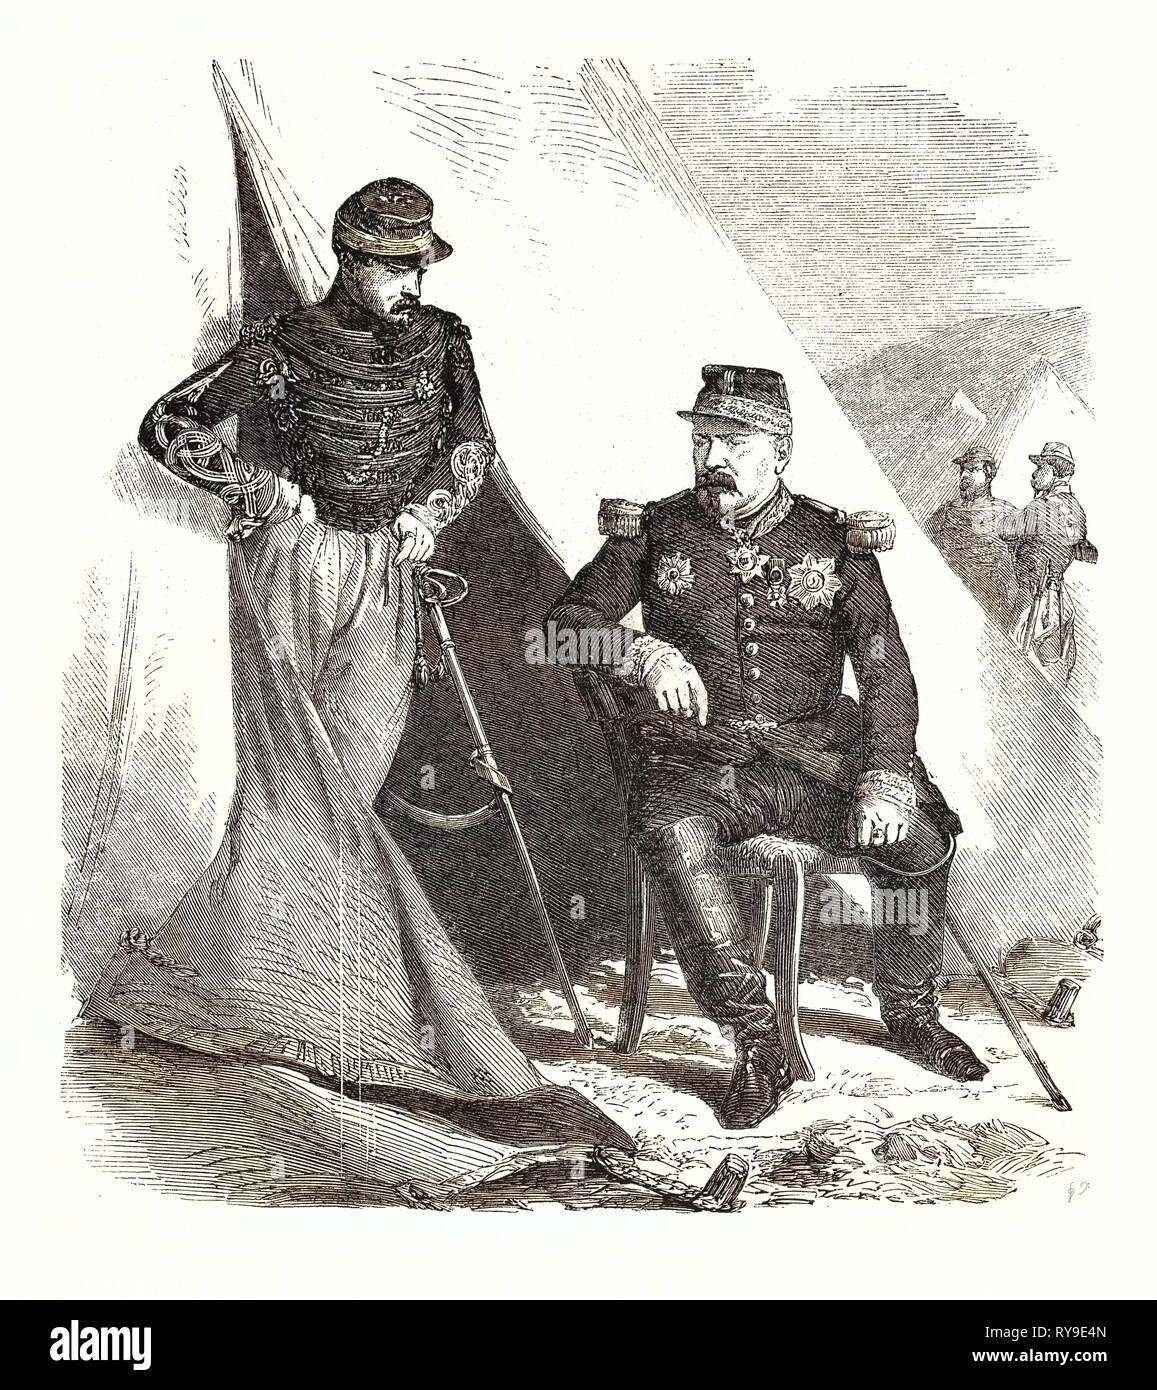 Général Bosquet. Pierre Joseph François Bosquet, 8 novembre 1810, Mont-De-Marsan, Landes 5 février 1861, était un général de l'armée française. Il a servi lors de la conquête de l'Algérie et la guerre de Crimée, de retour de Crimée, il est fait Maréchal de France et sénateur Banque D'Images